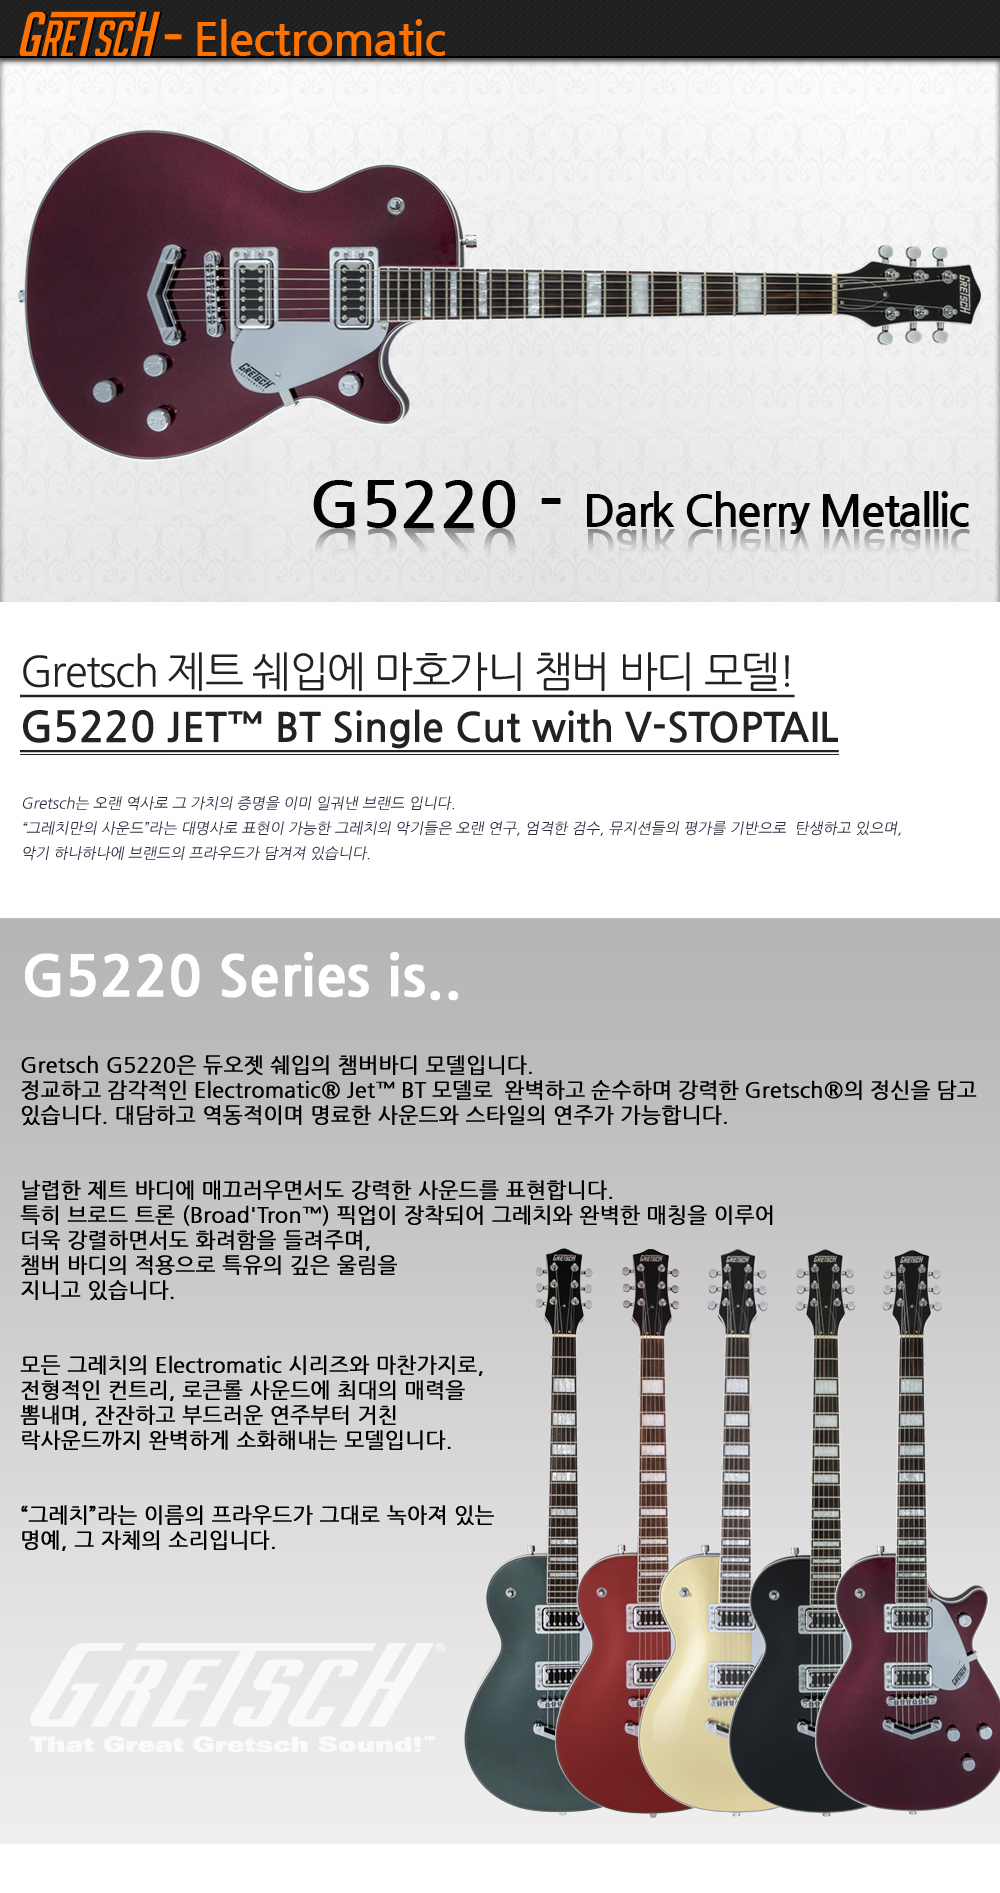 Gretsch-G5220-DarkCherryMetallic_1_172920.jpg